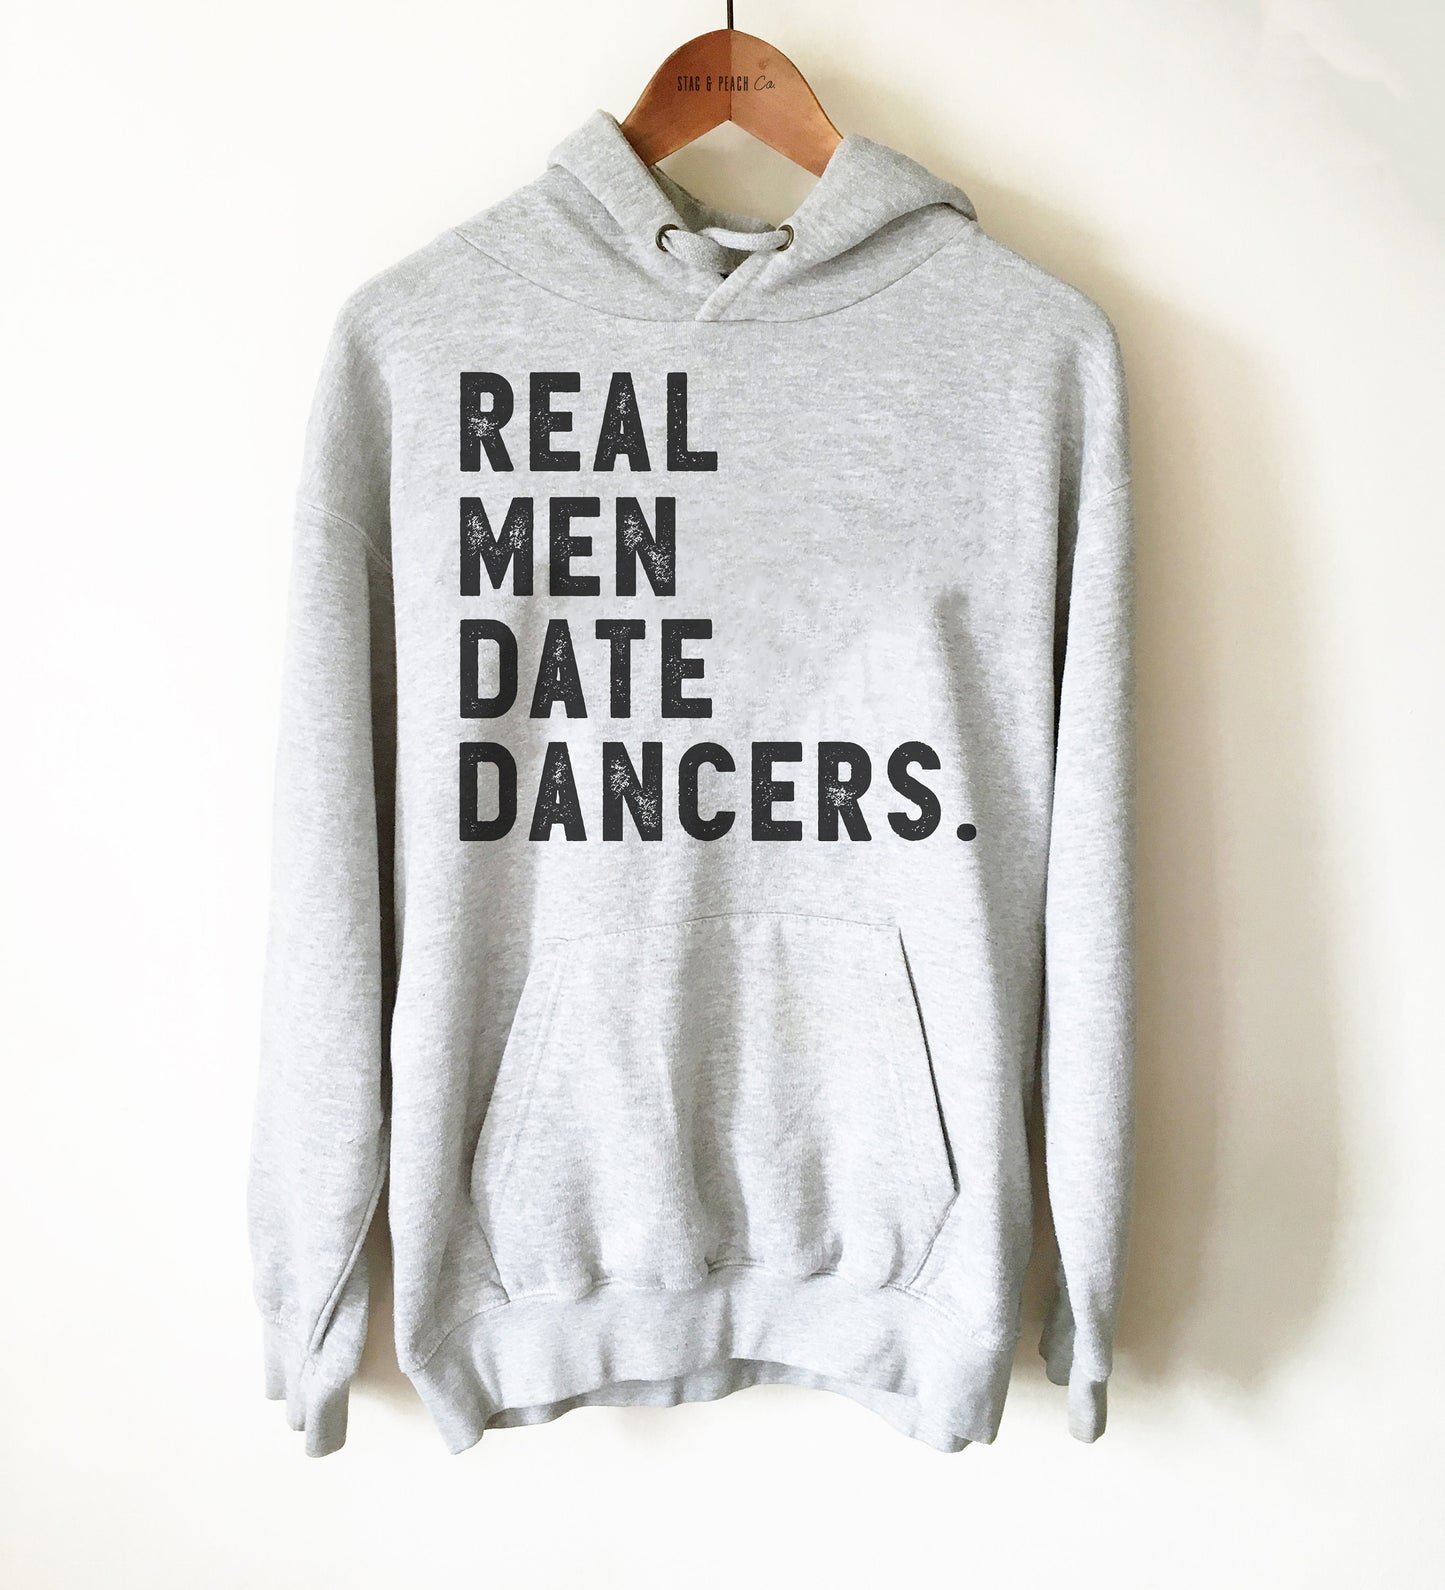 Dancer Boyfriend Gift - Real Men Date Dancers Unisex Hoodie, Boyfriend Gift, Real Men Shirt, Salsa Shirt, Tap Dance Shirt, Hip Hop Shirt